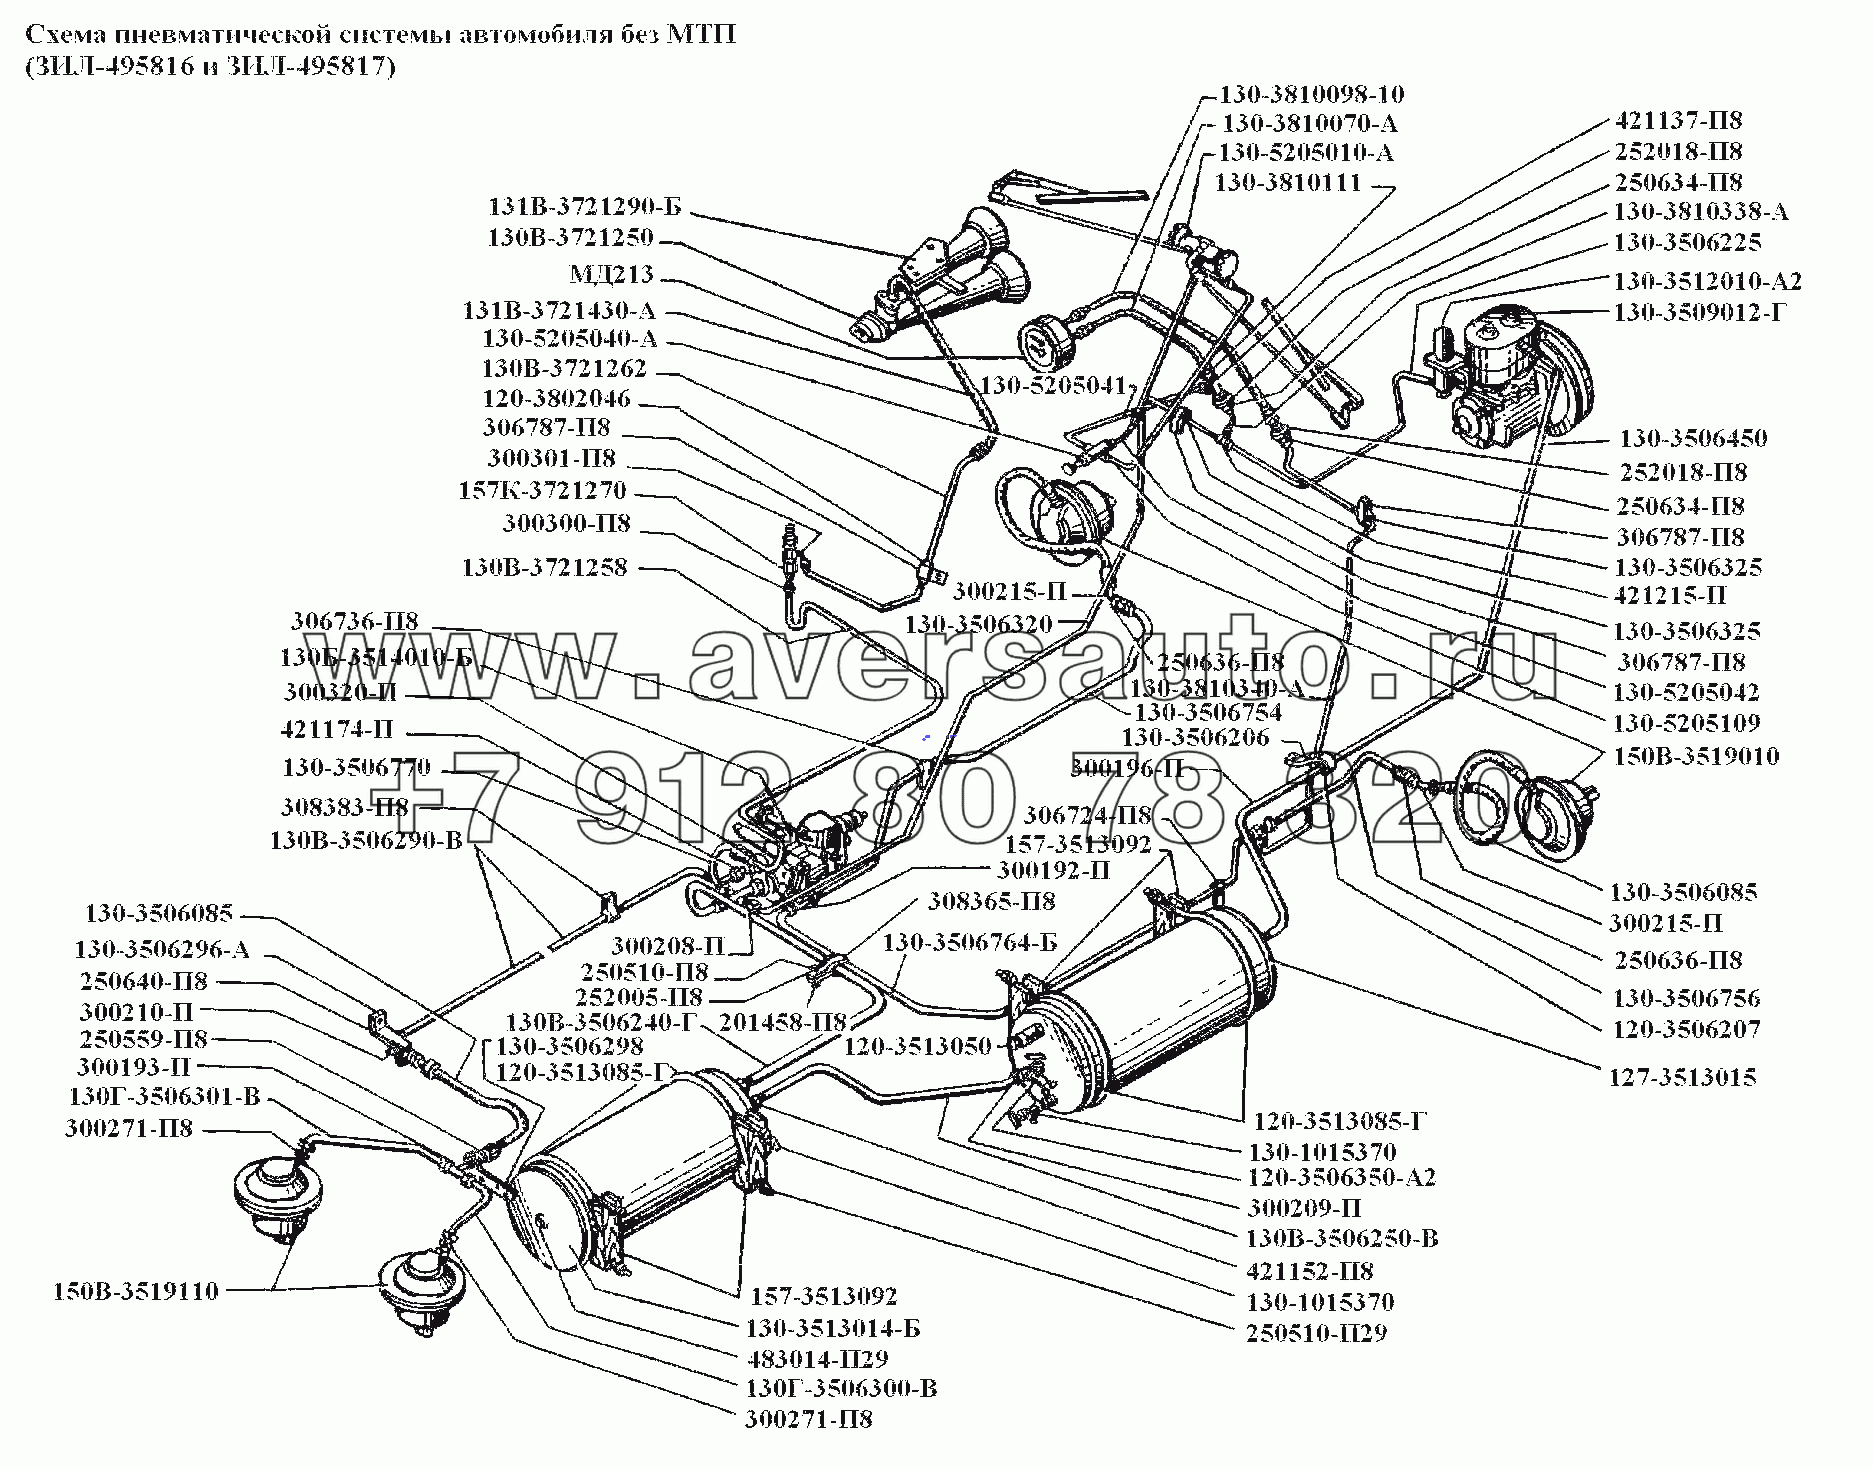 Схема пневматической системы ЗИЛ-130. Каталог 1985г.